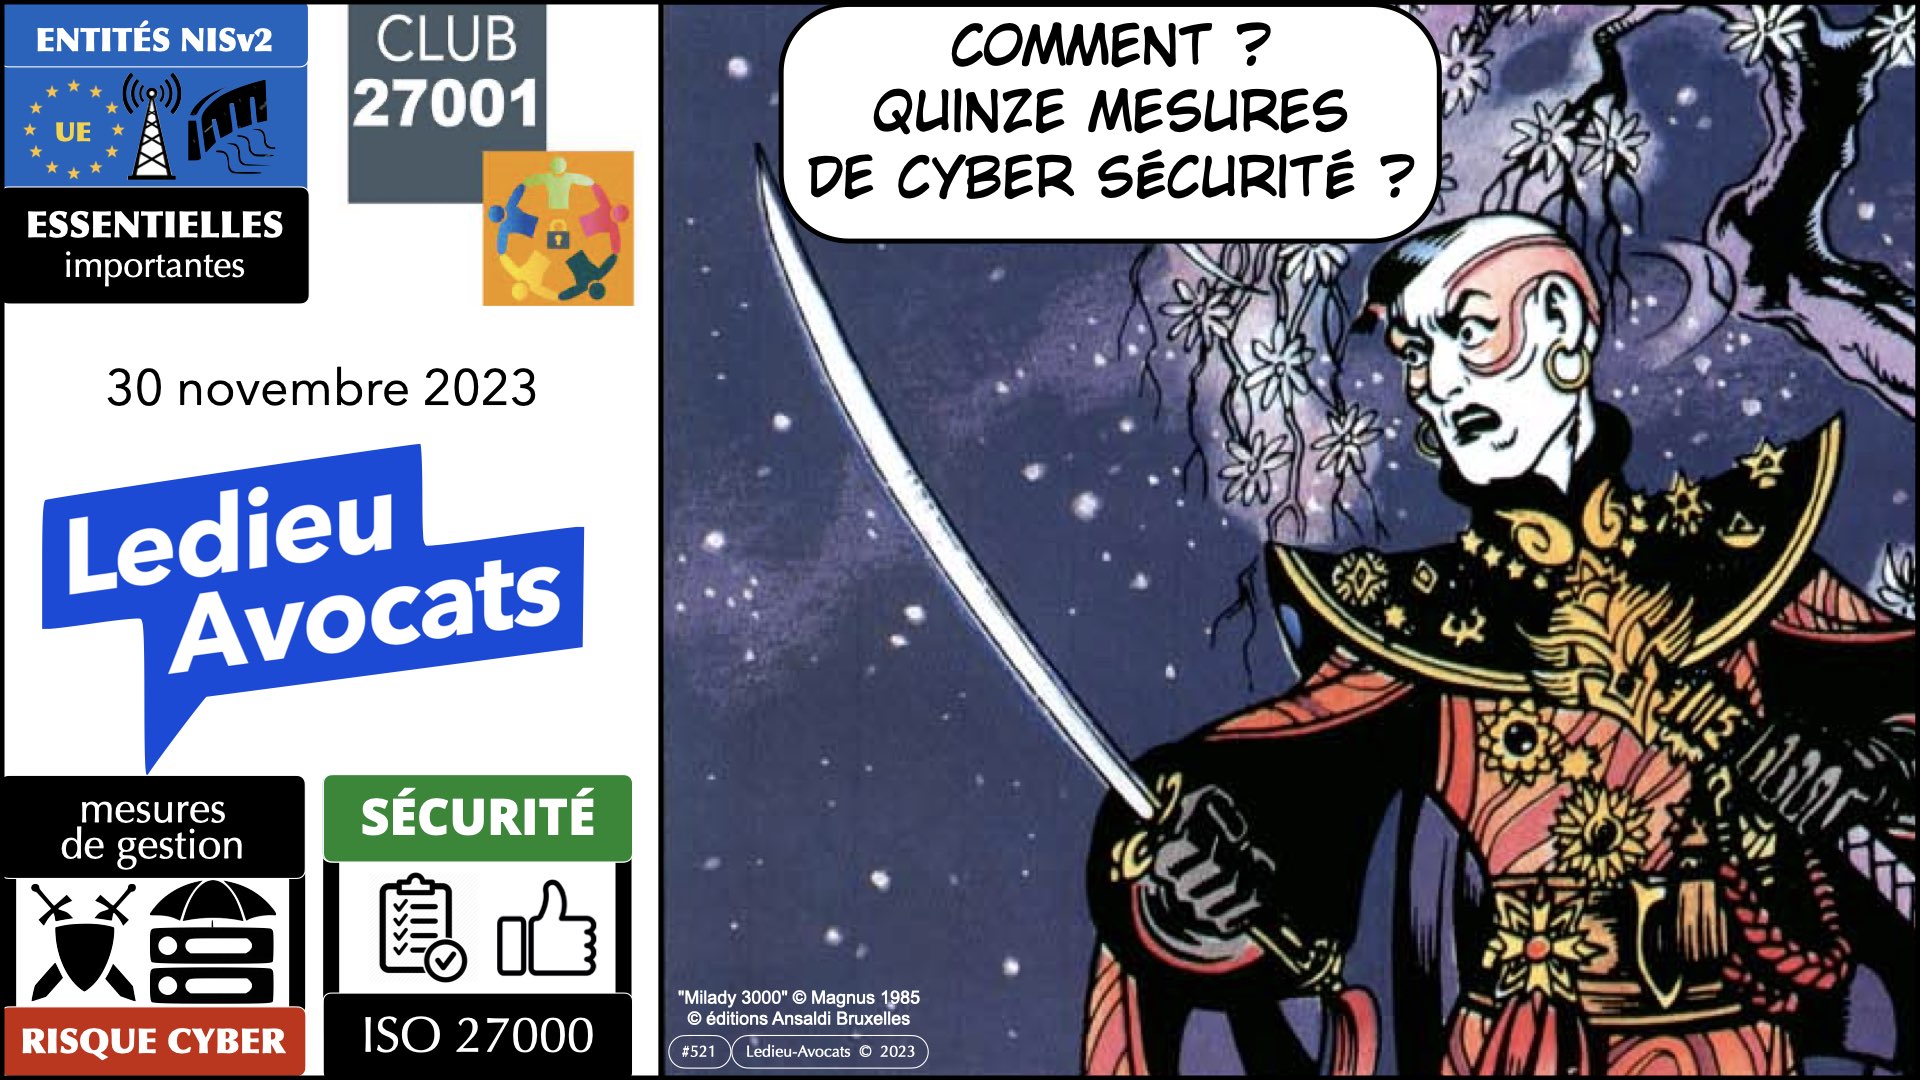 NISv2 les mesures techniques de cyber sécurité" expliquées au club ISO 27001 - 30 novembre 2023 © Ledieu-Avocats 2023